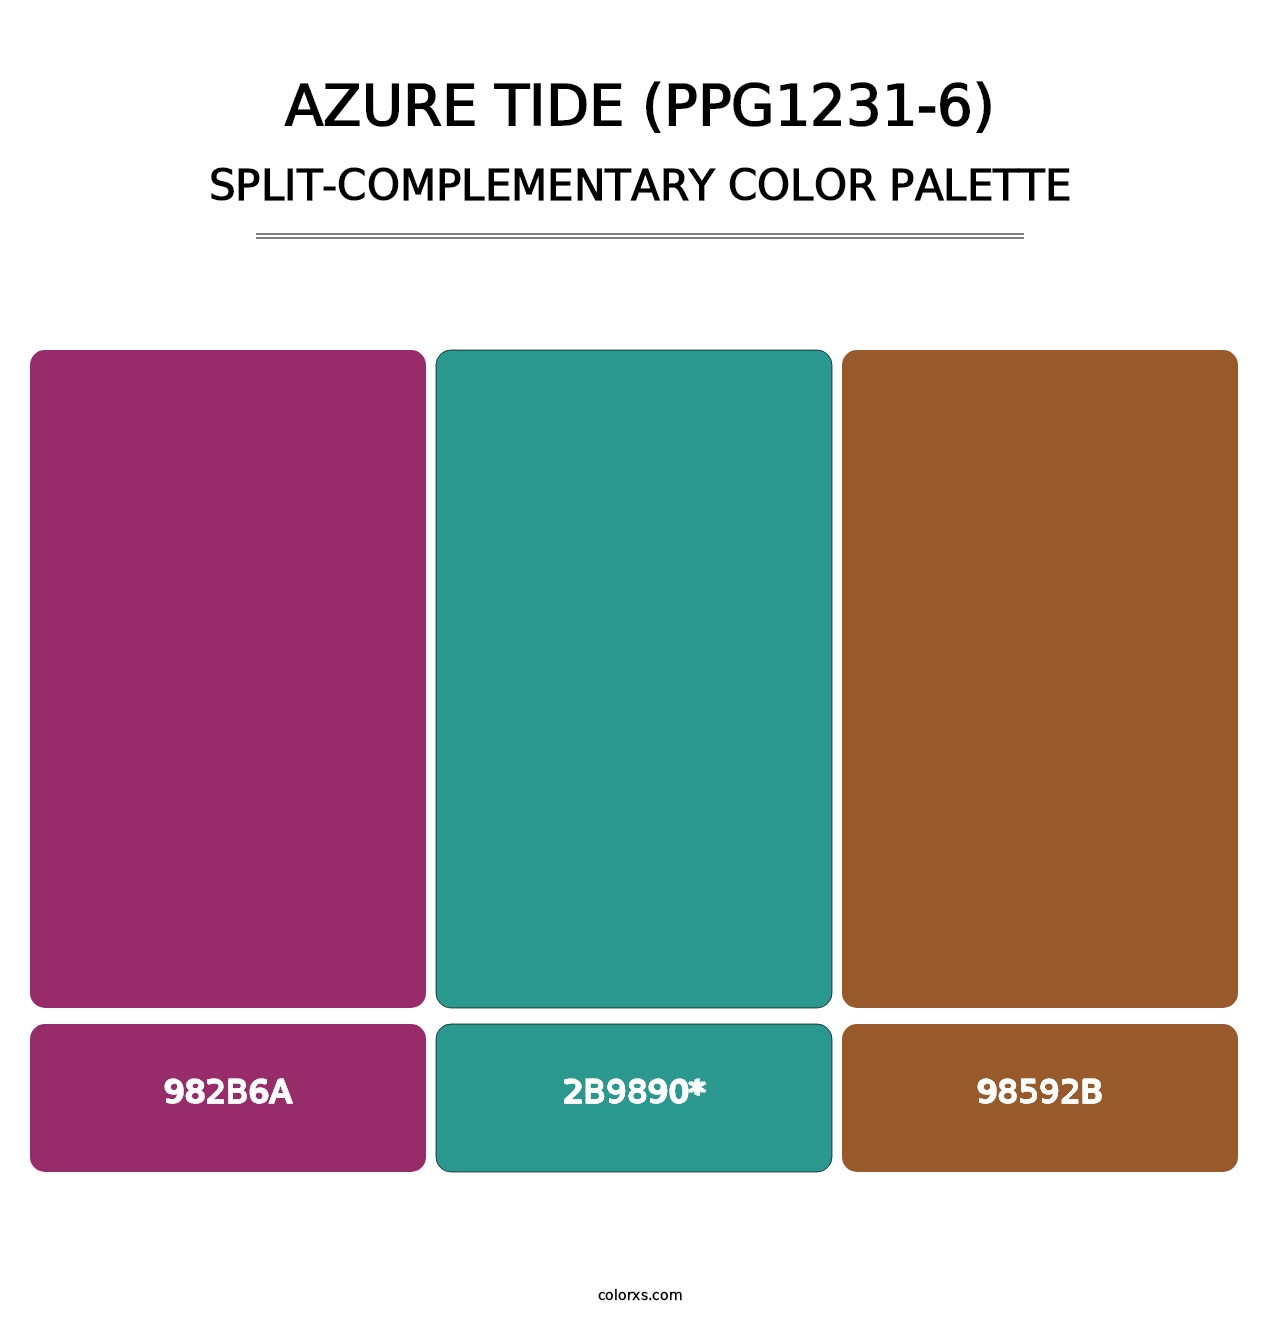 Azure Tide (PPG1231-6) - Split-Complementary Color Palette